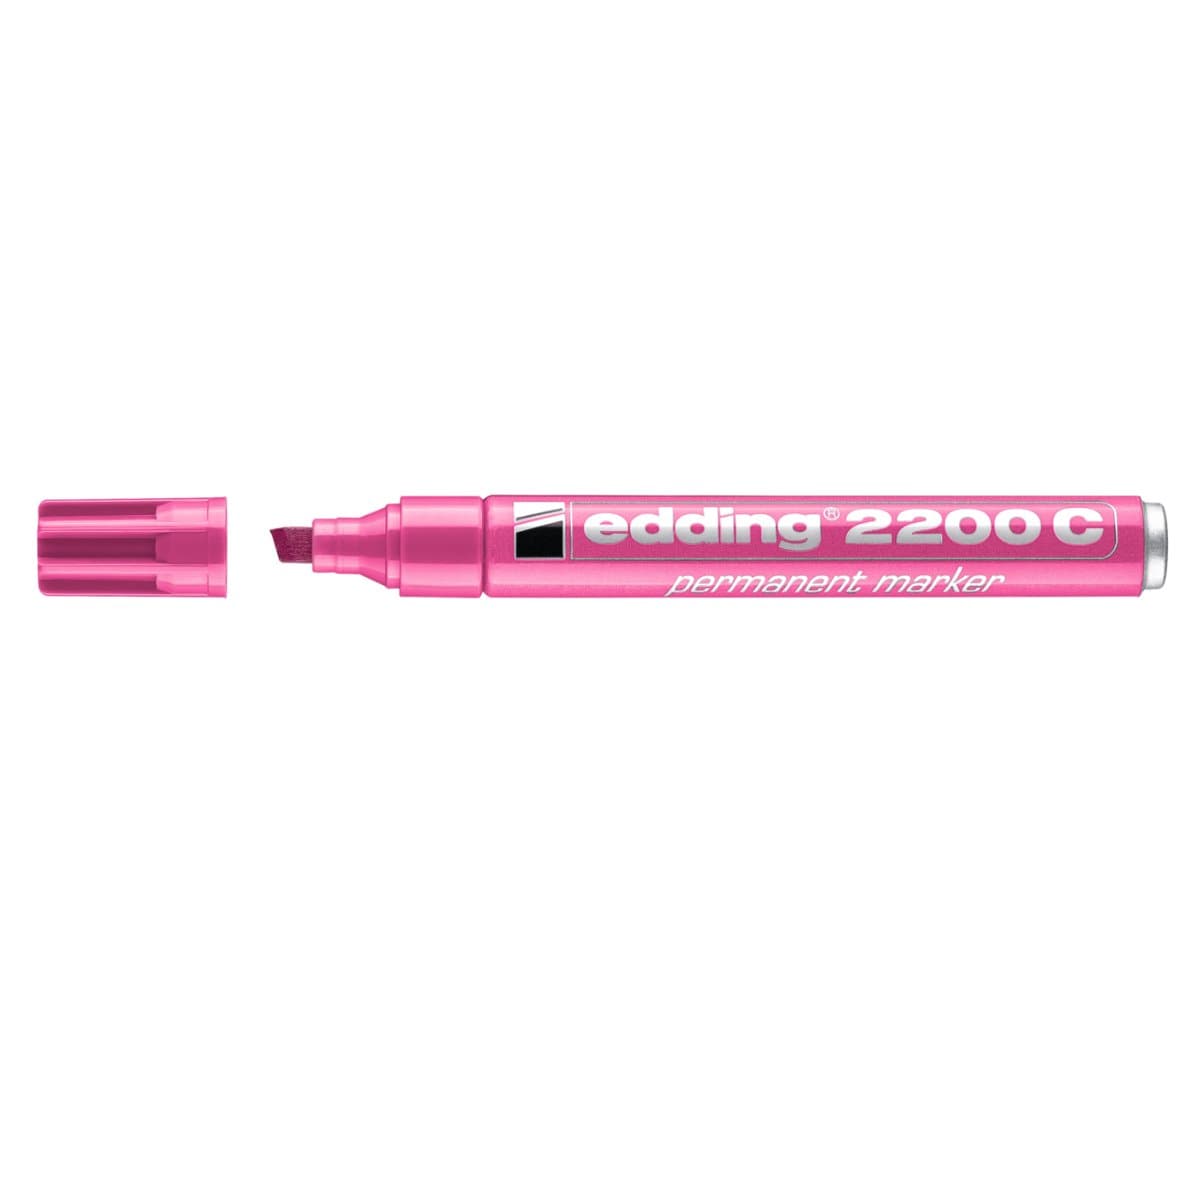 edding 2200C Permanent Marker, 1-5mm Chisel Tip, Pink